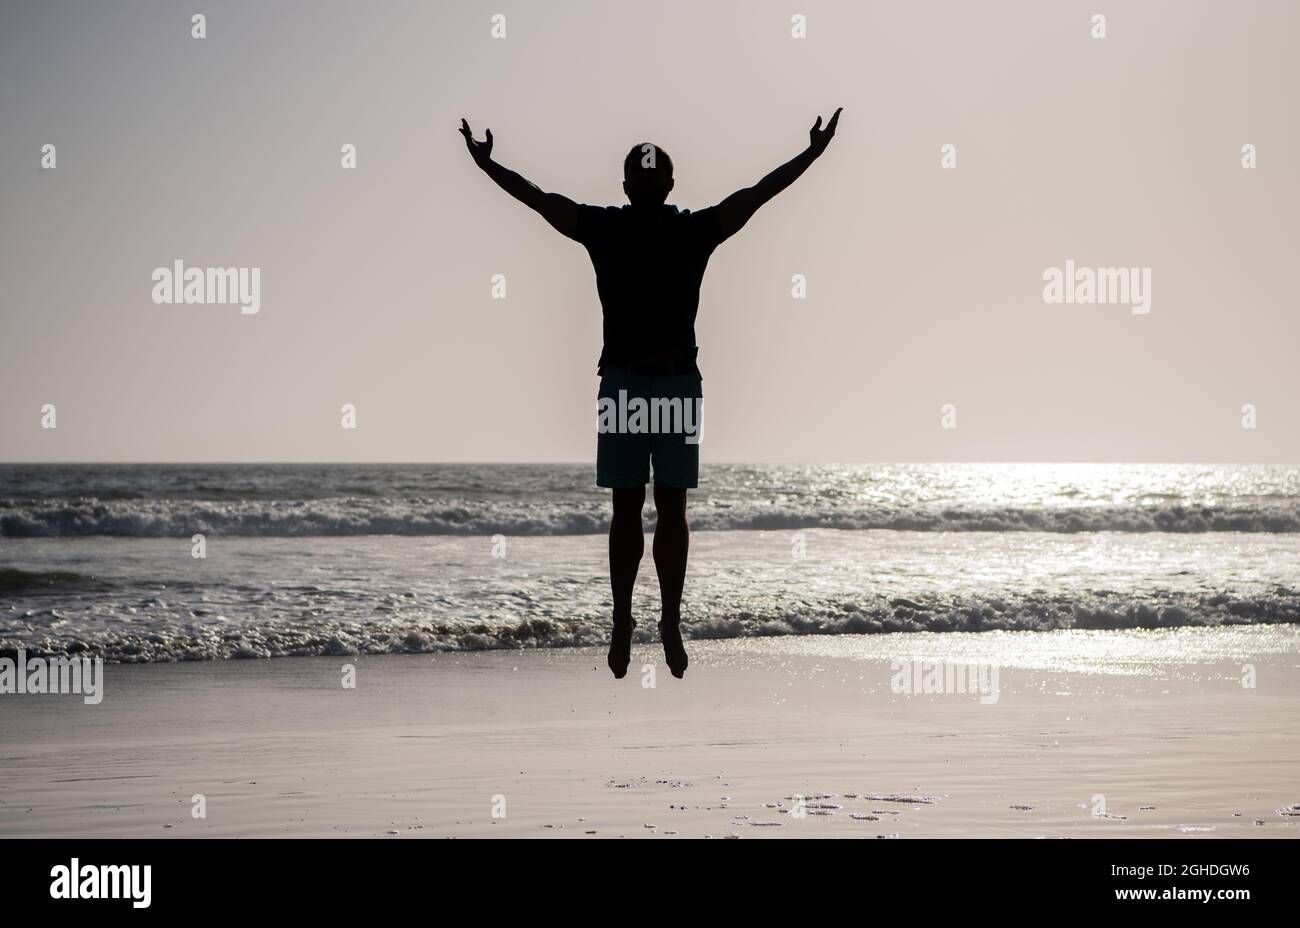 Fühlen Sie Freiheit. Jung und frei. Sportler springen im Meer. Morgendliche Workout-Aktivität. Stockfoto